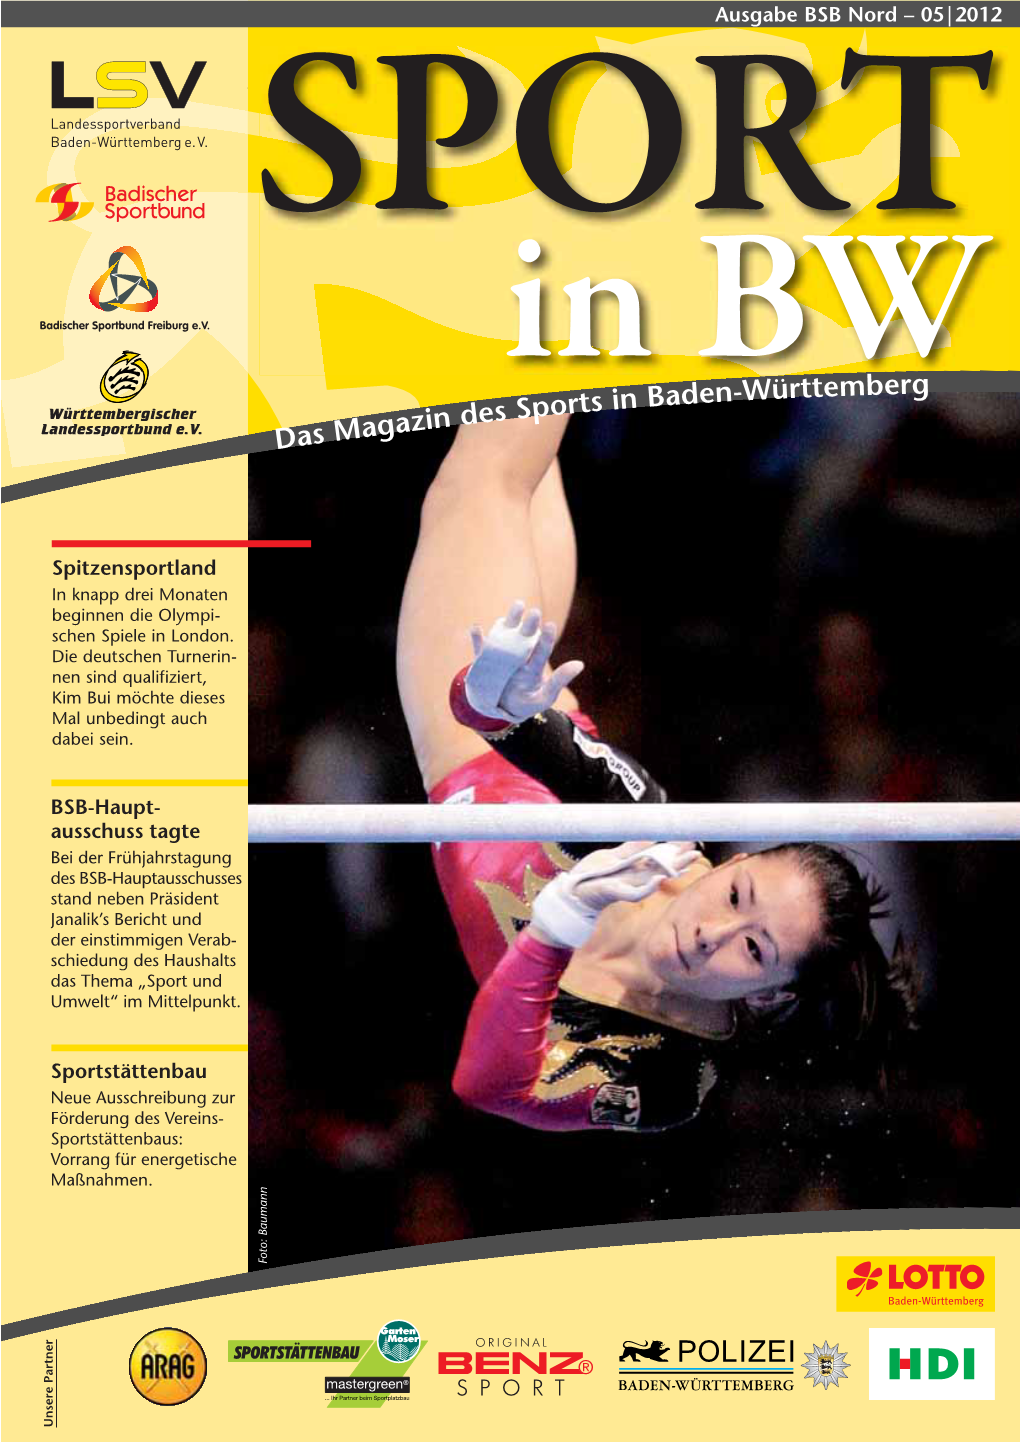 In BW Das Magazin Des Sports in Baden-Württemberg